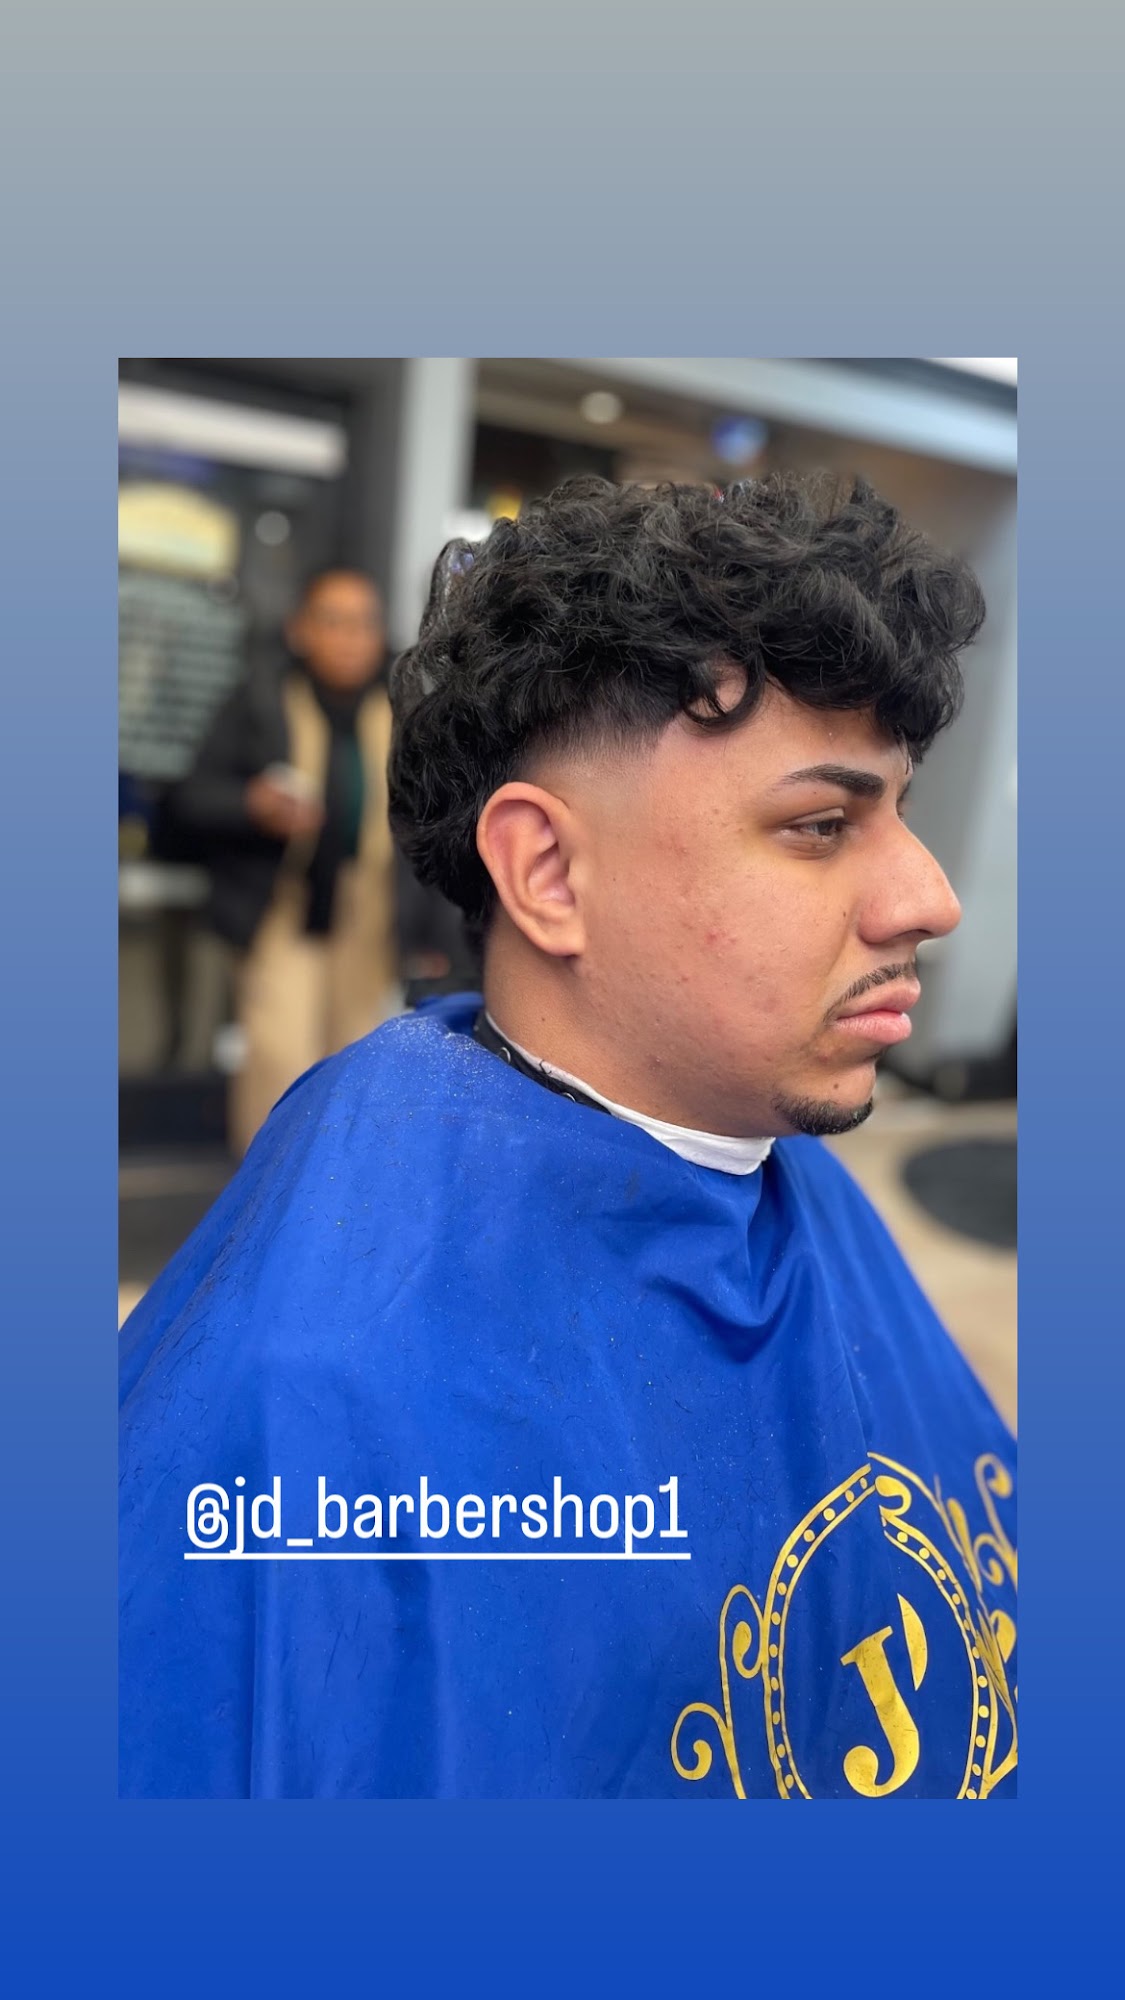 JD Barbershop1